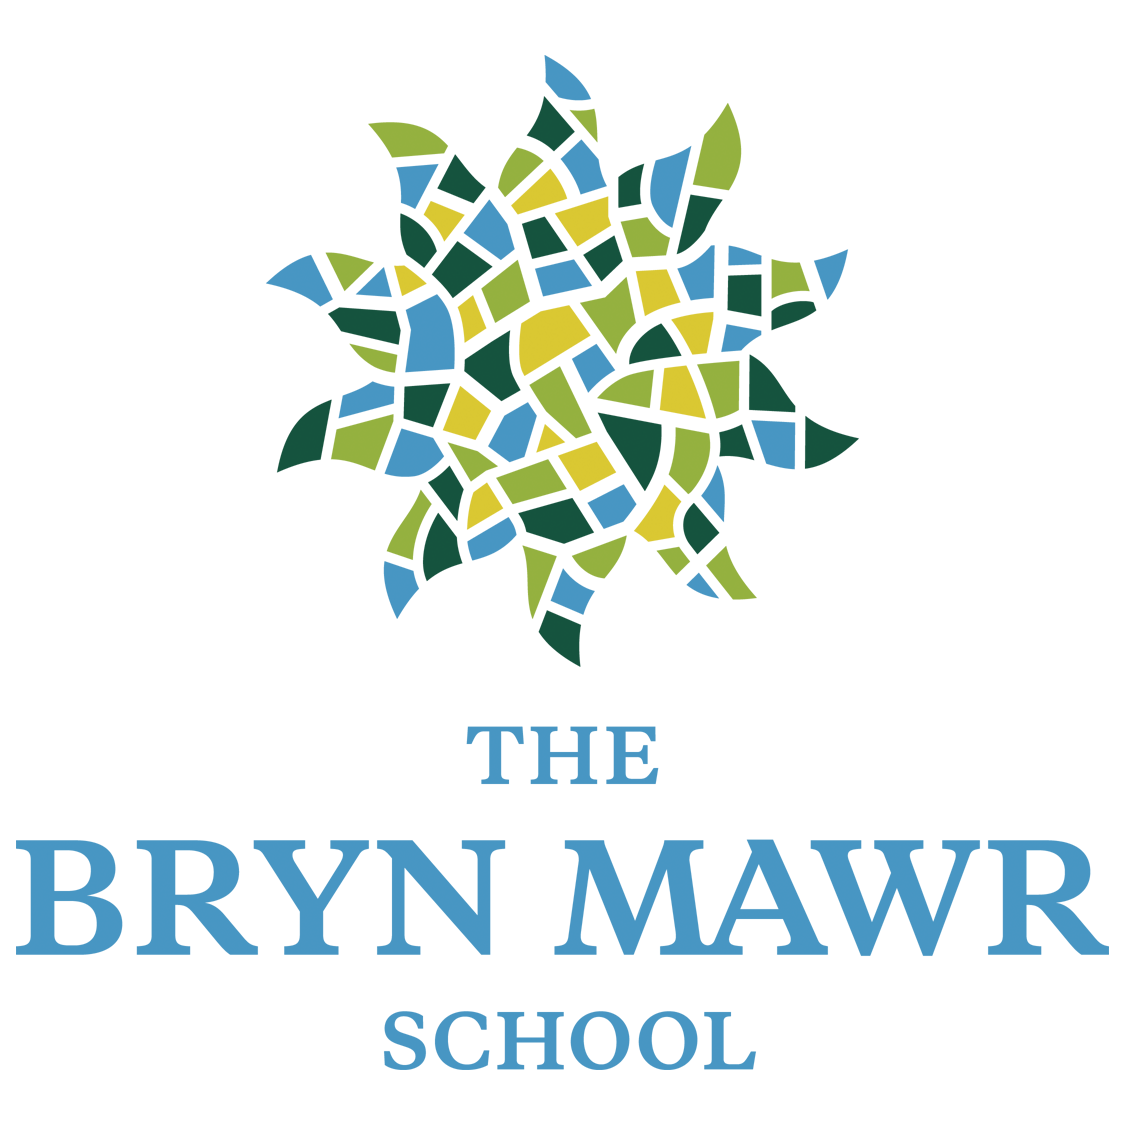 The Bryn Mawr School logo.